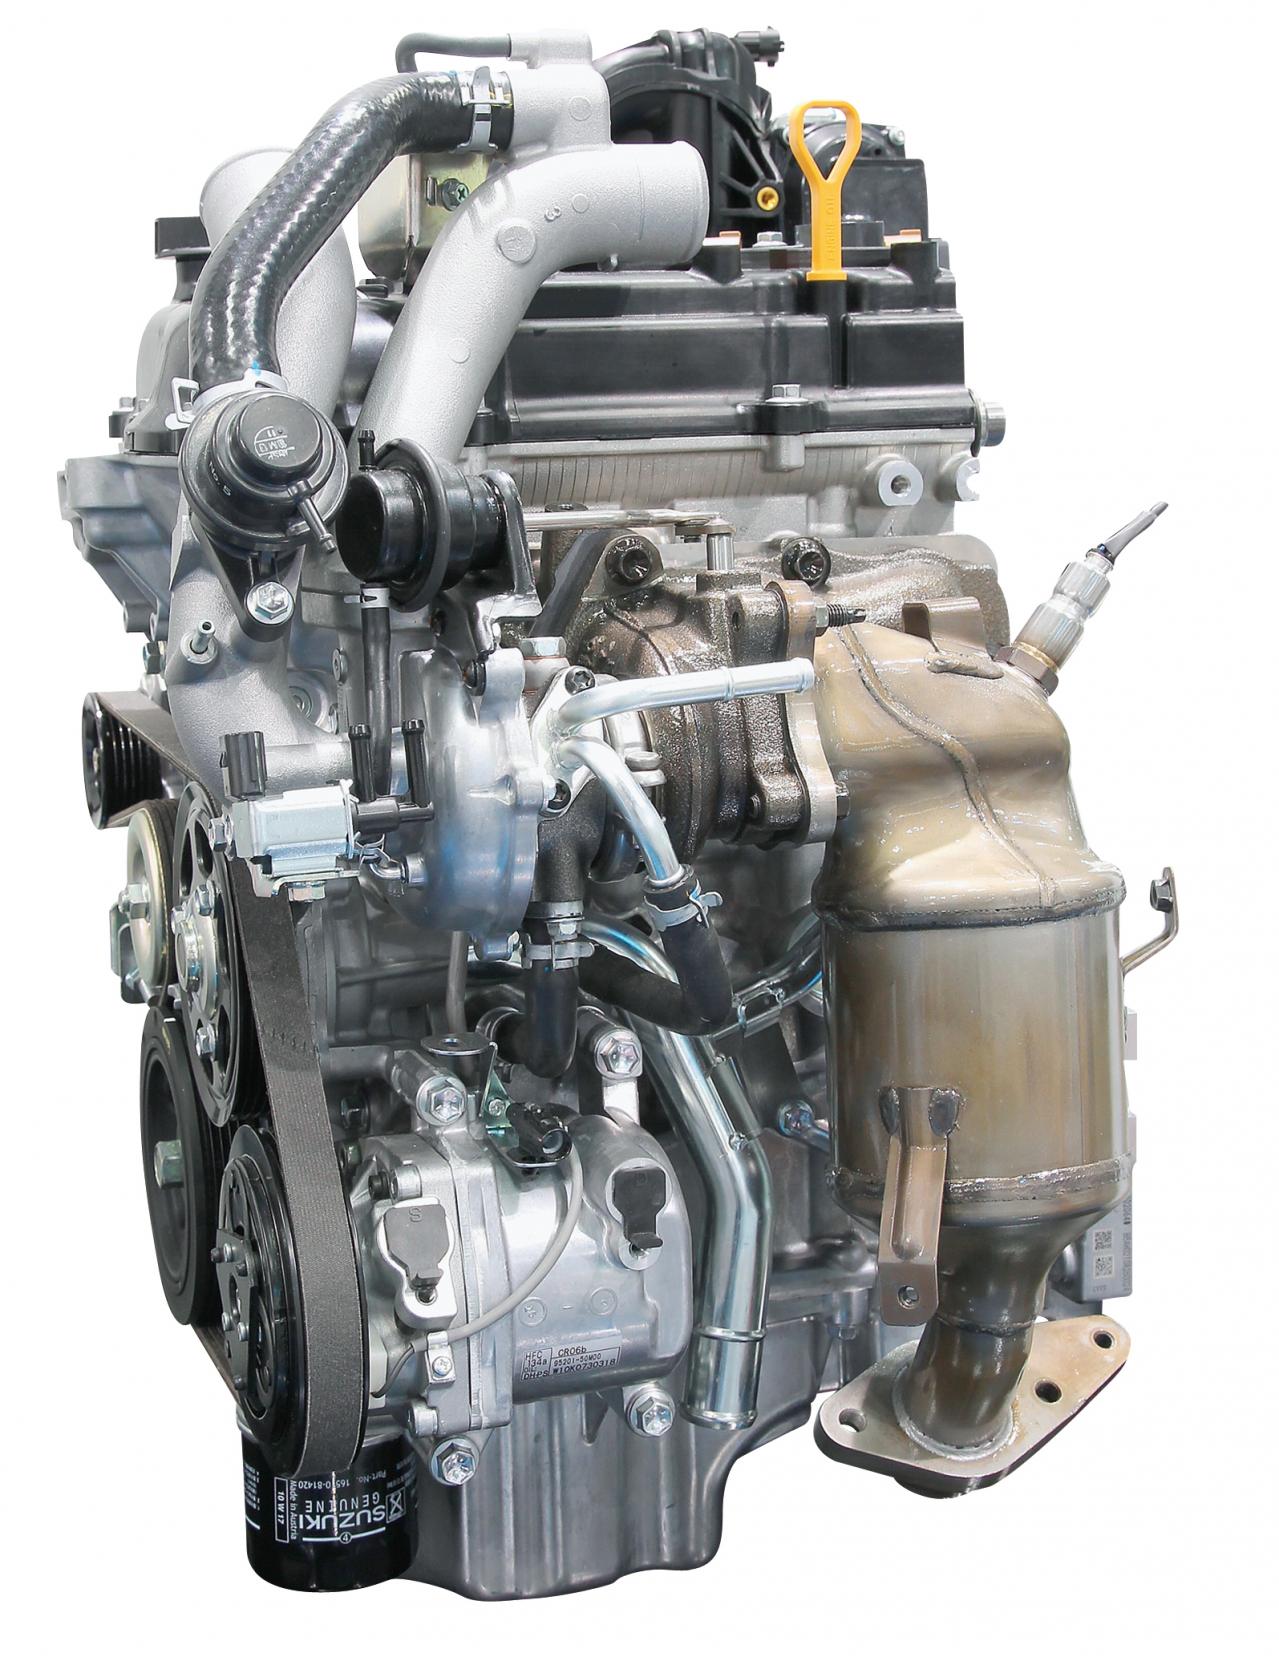 即納特典付き リビルト エンジン エブリィ DA17V R06Aターボ 国内生産 コア返却必要 事前適合確認必要